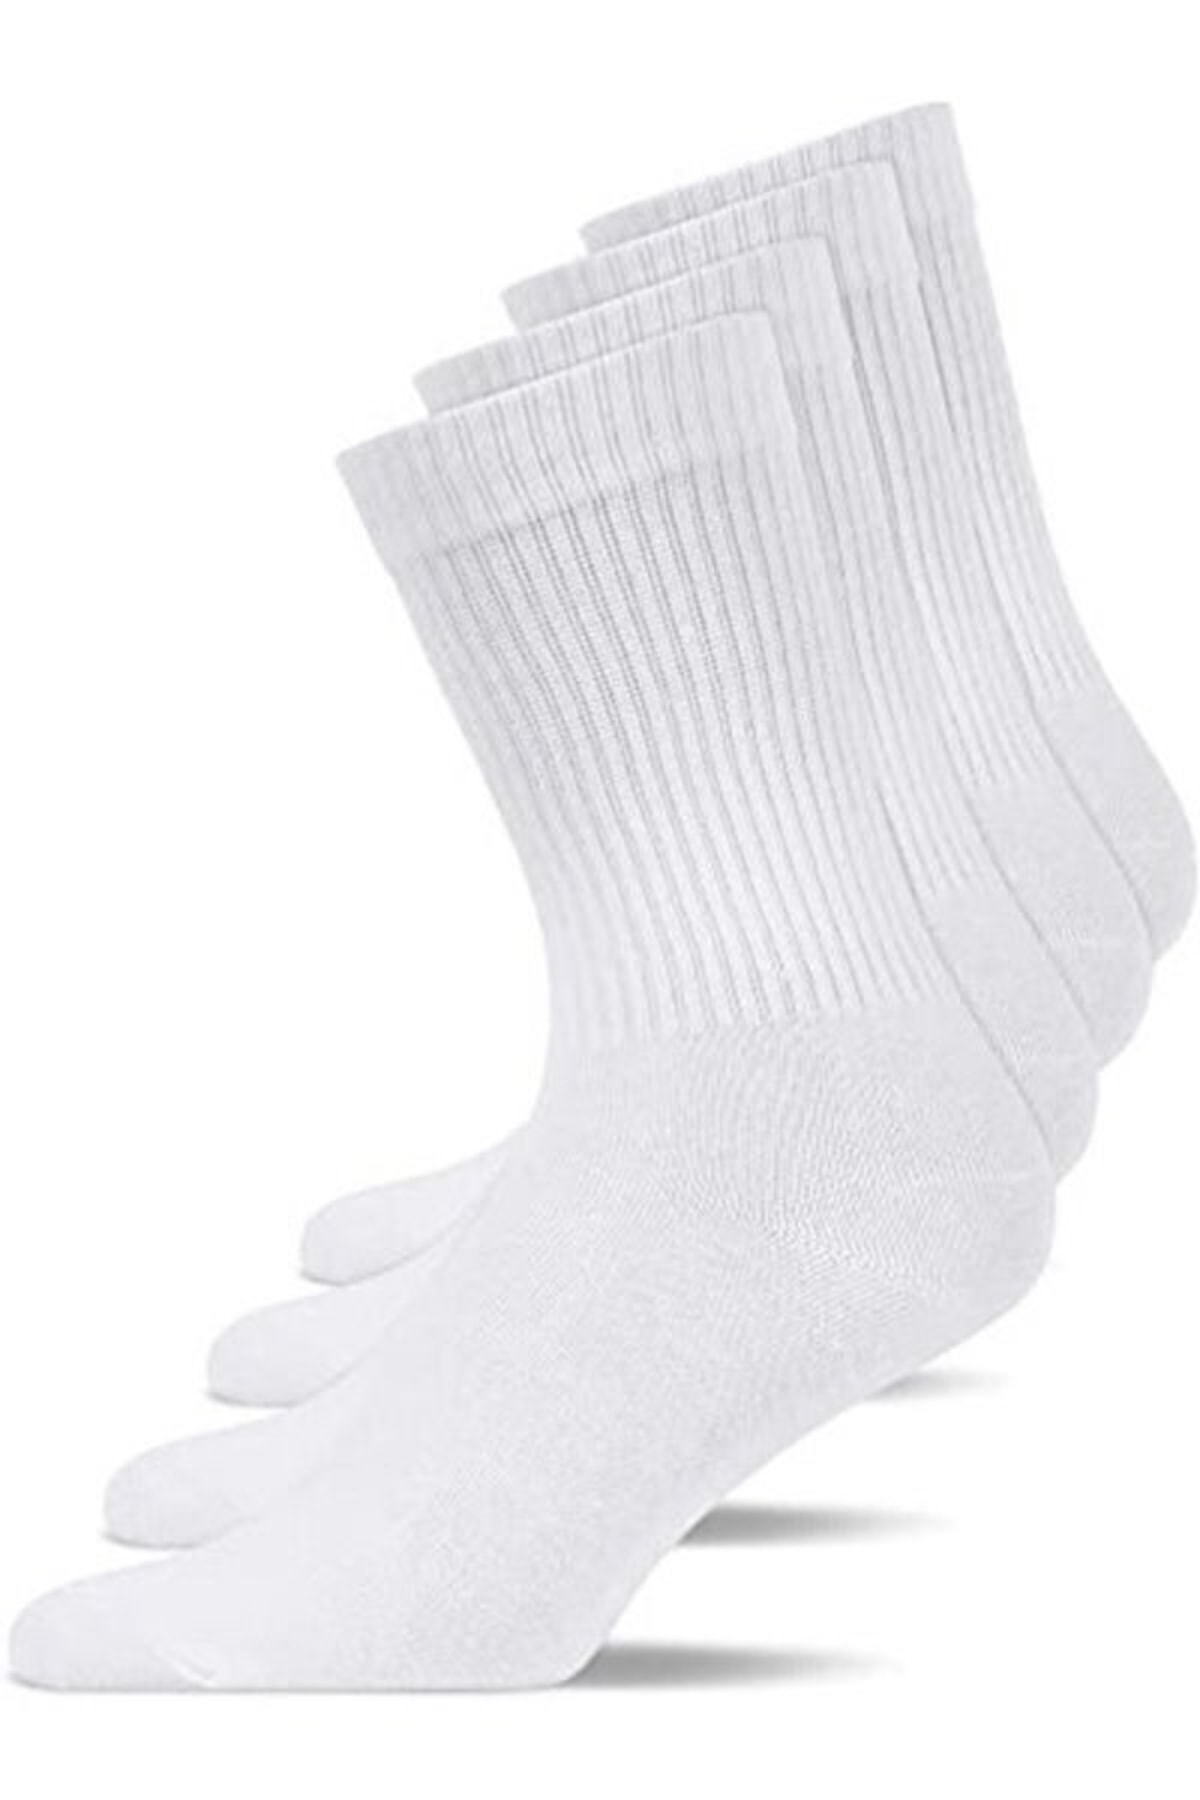 SMYRNA Tekstil 3(adet) Unisex Soket Çorap Tenisçi Çorabı Düz Beyaz Çorap